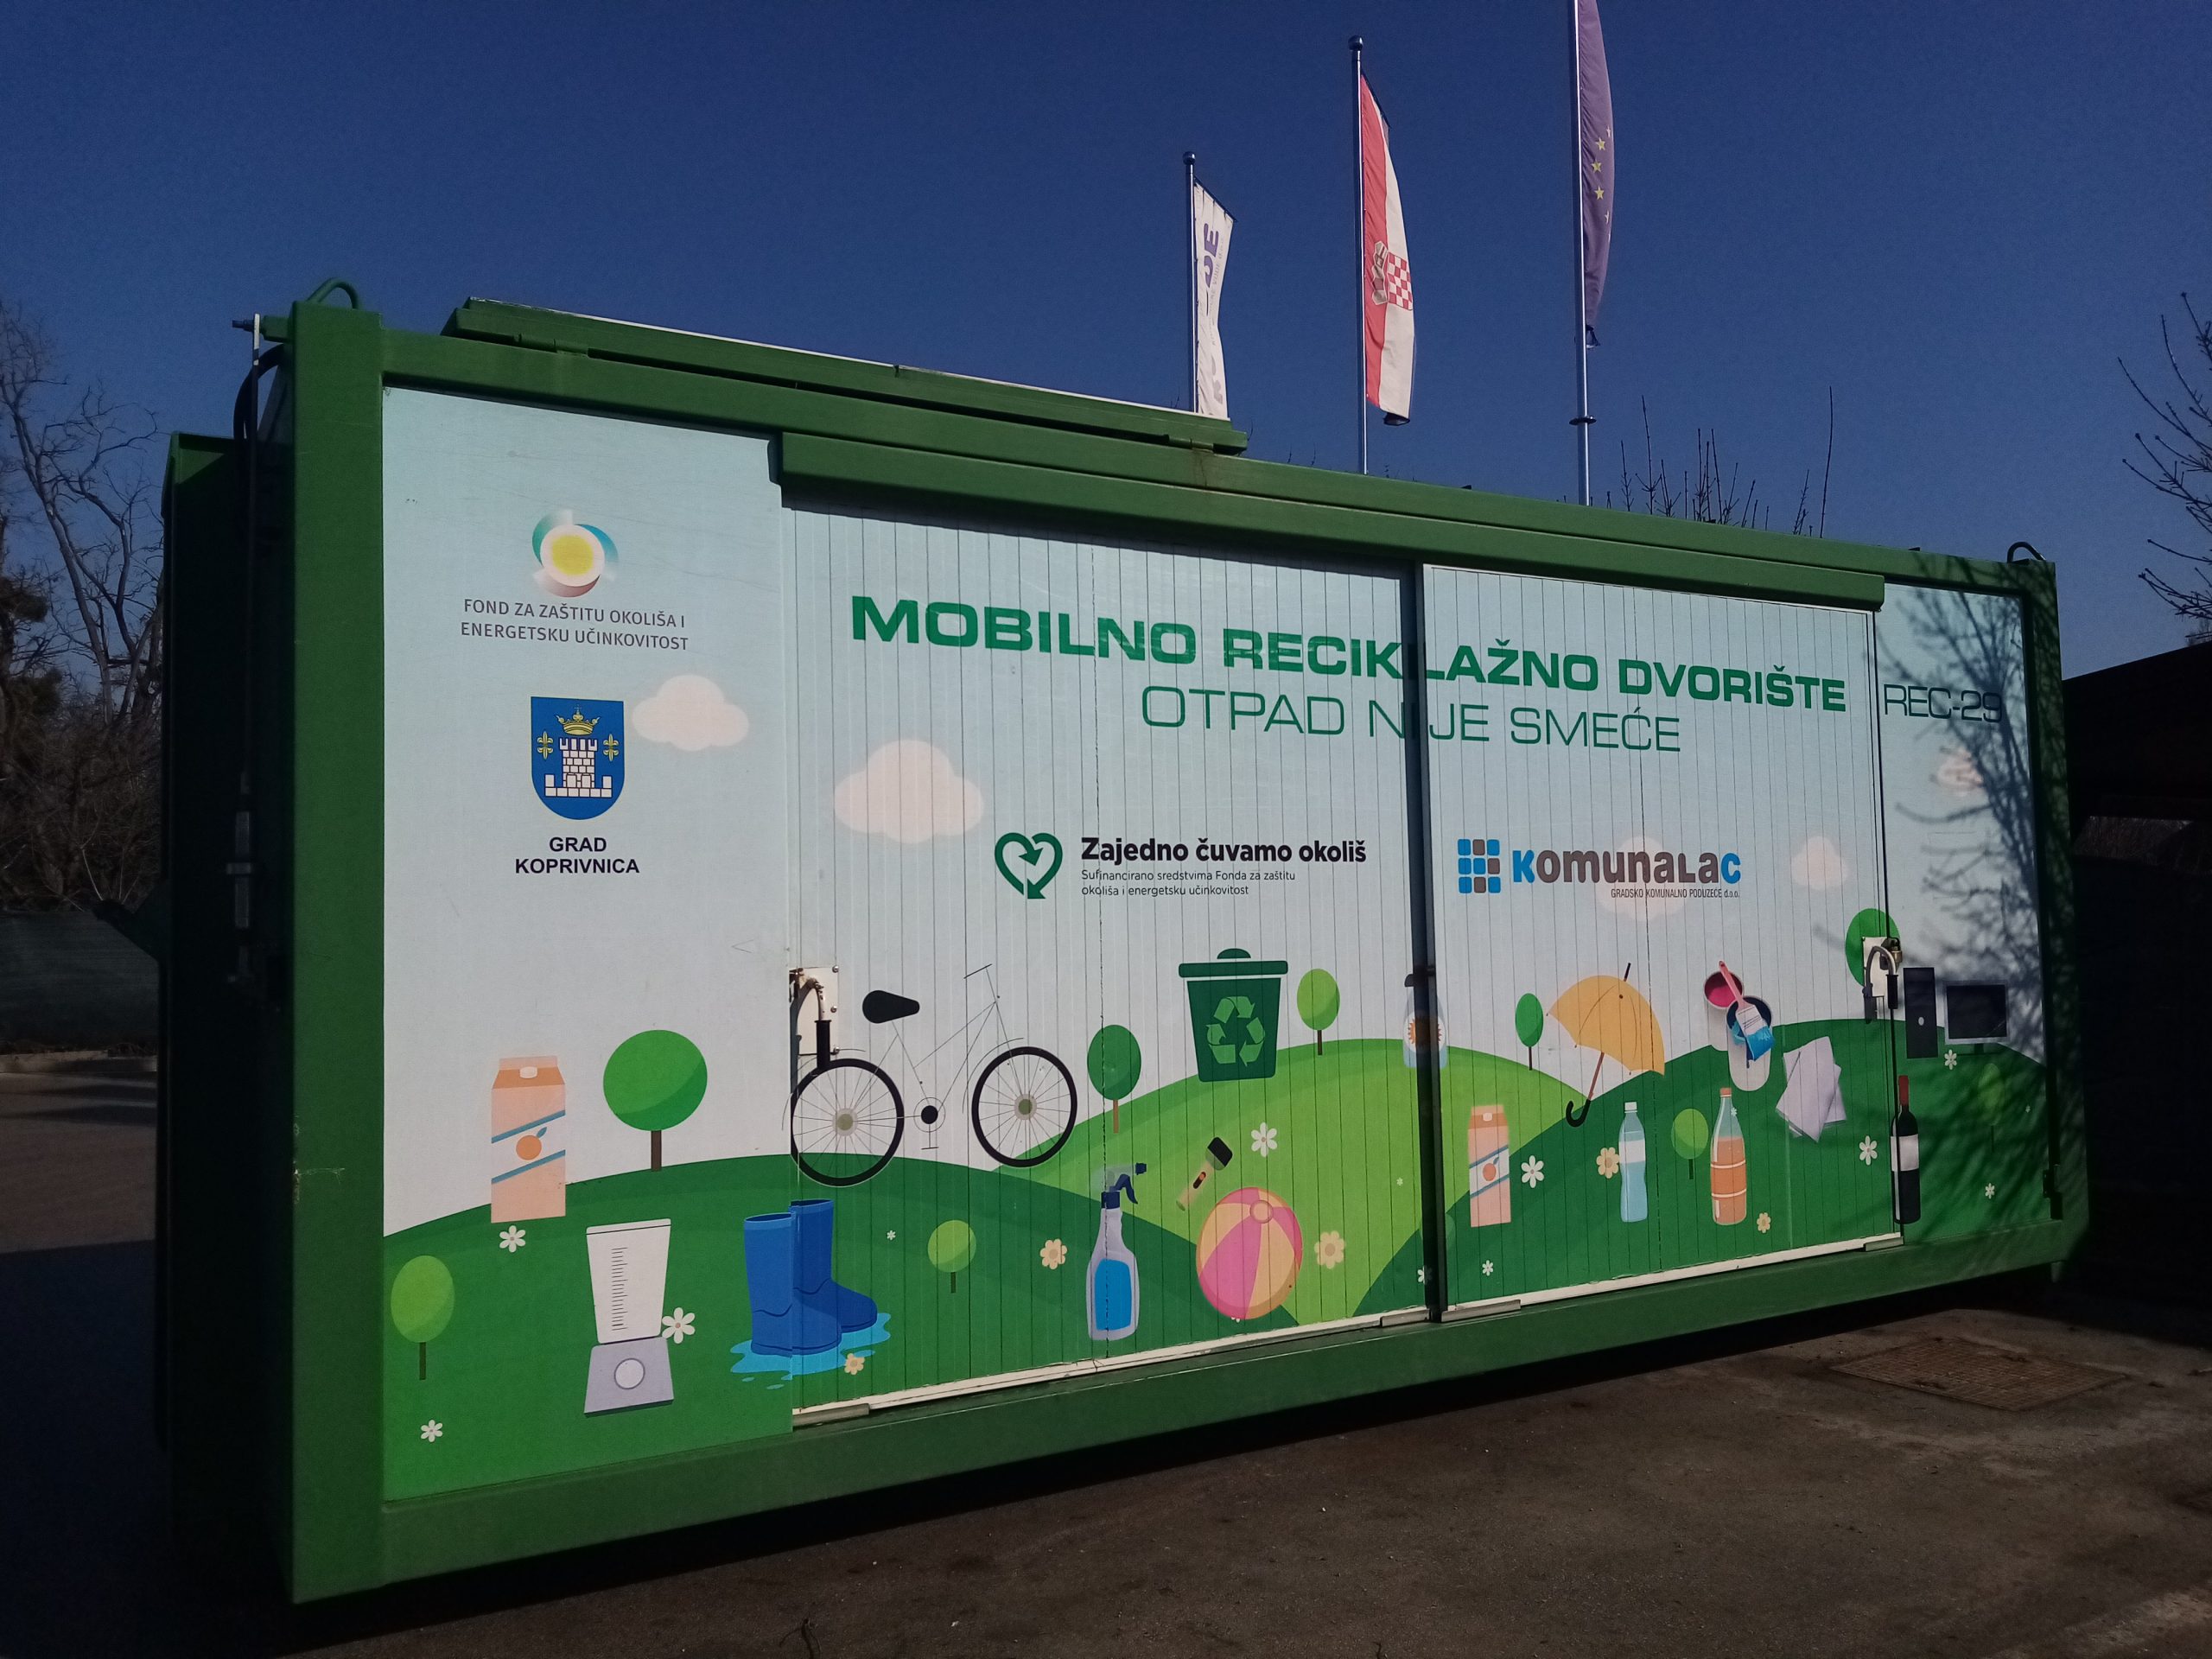 Mobilno reciklažno dvorište u četvrtak, 10. studenog, nalazit će se u Starigradu kod društvenog doma